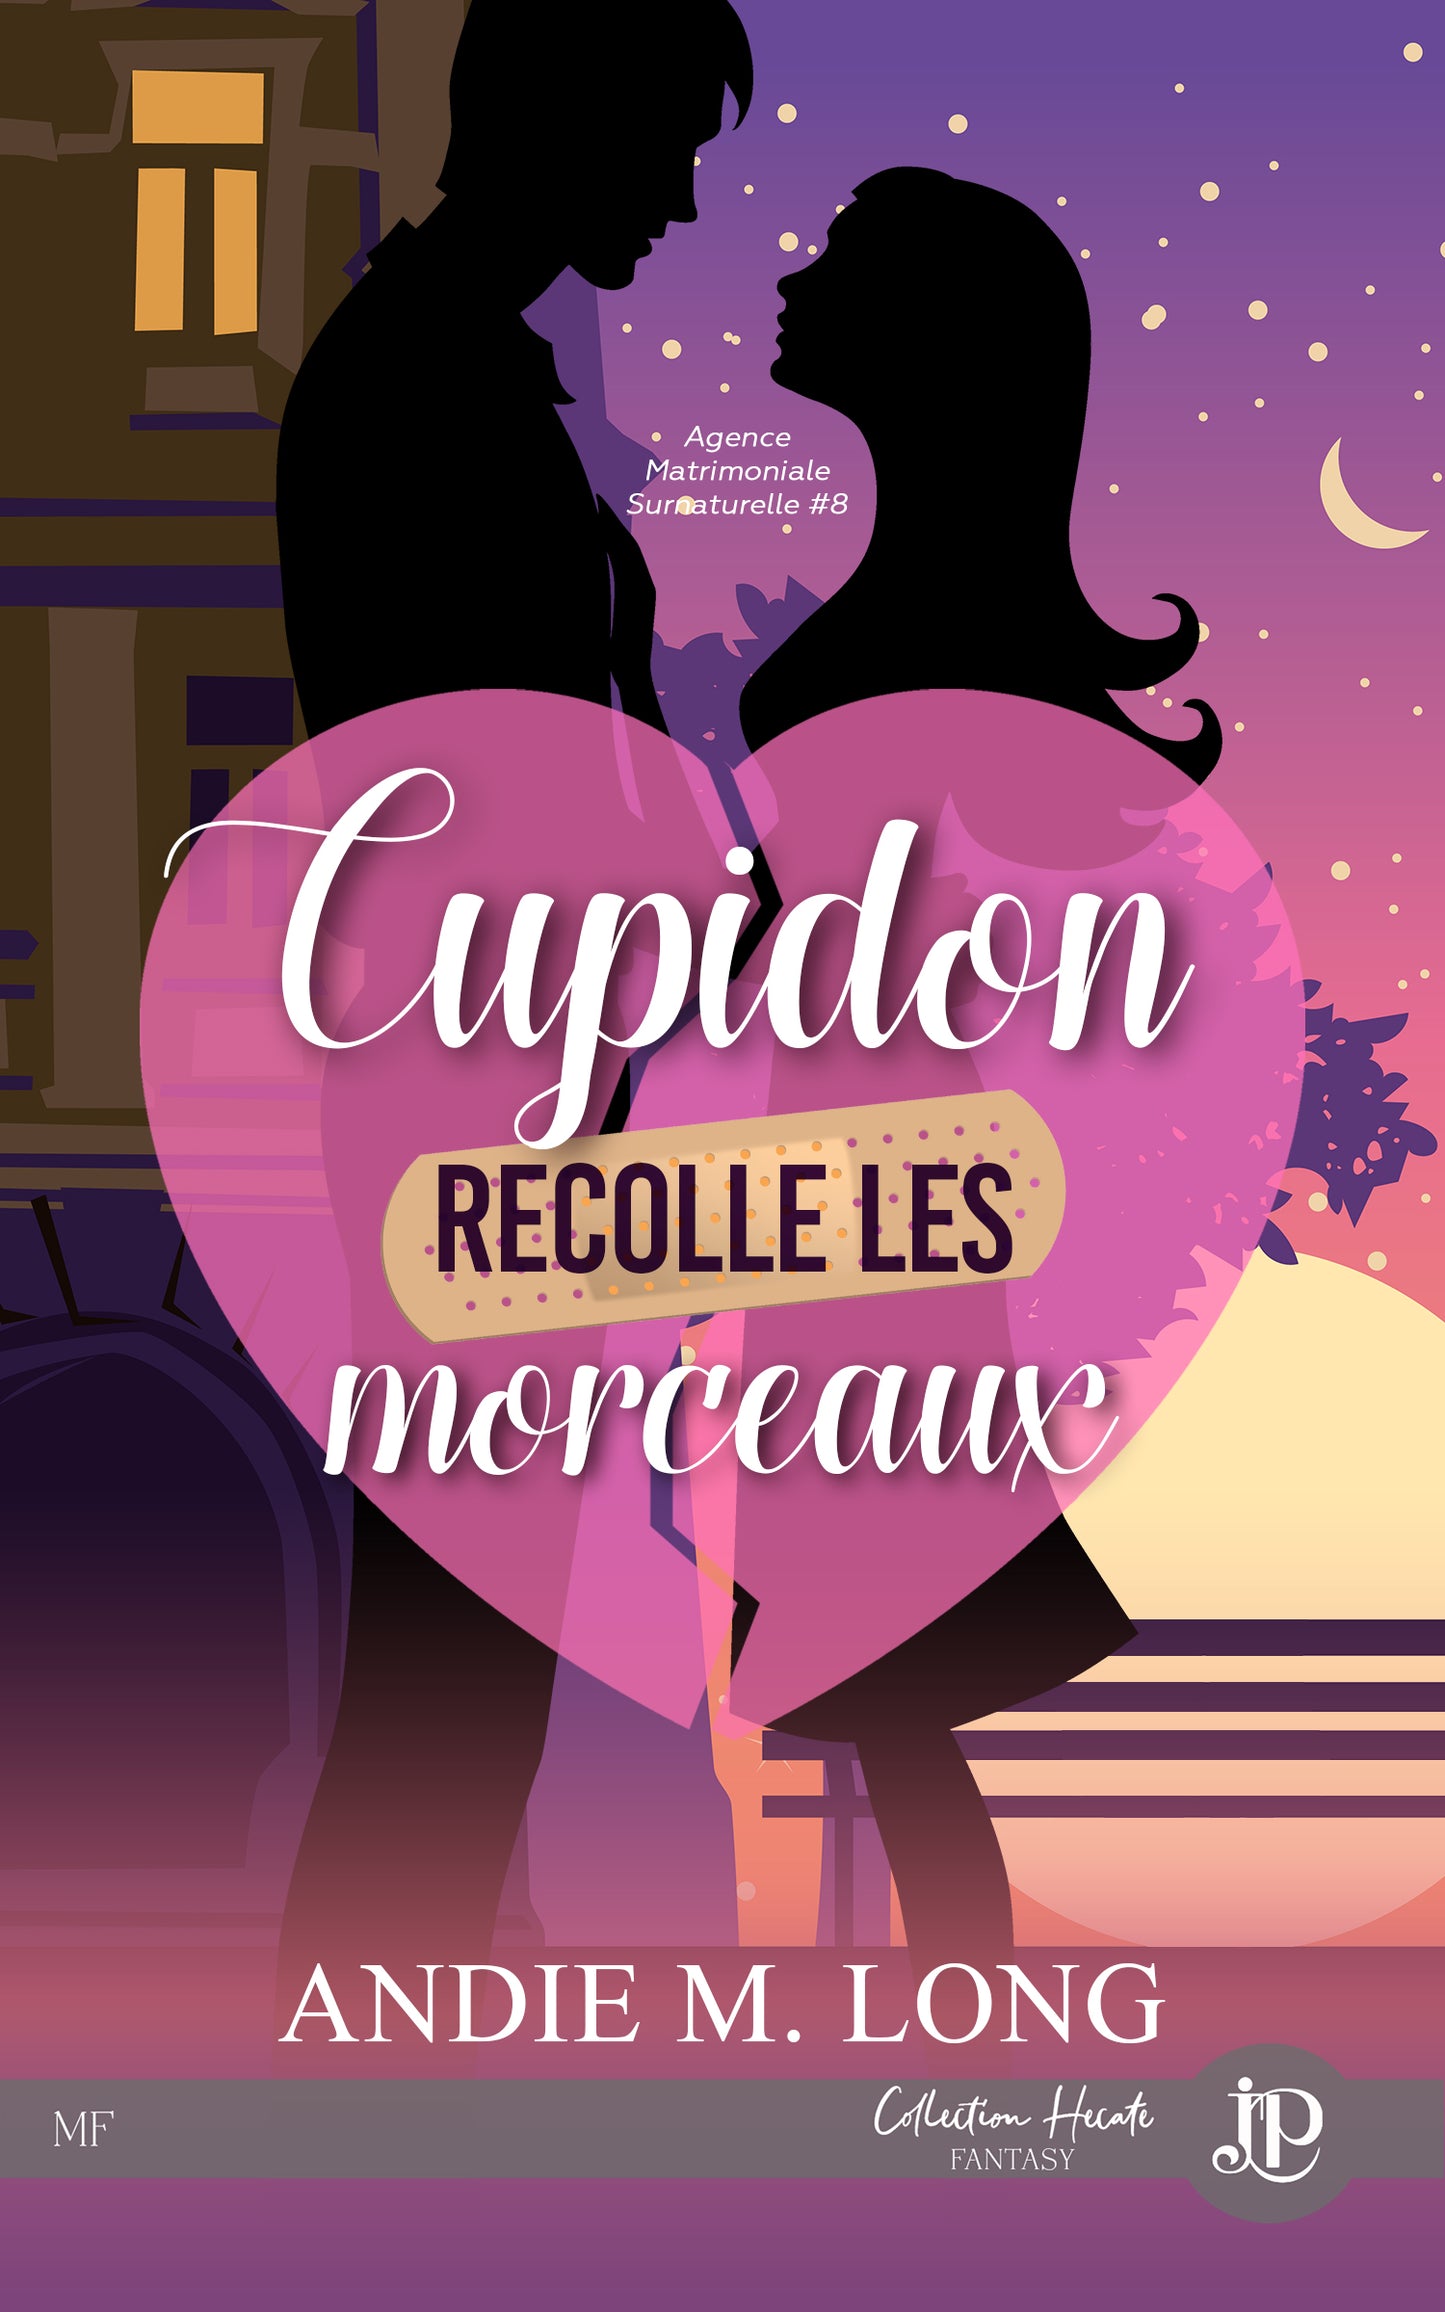 Agence matrimoniale surnaturelle #8 : Cupidon recolle les morceaux